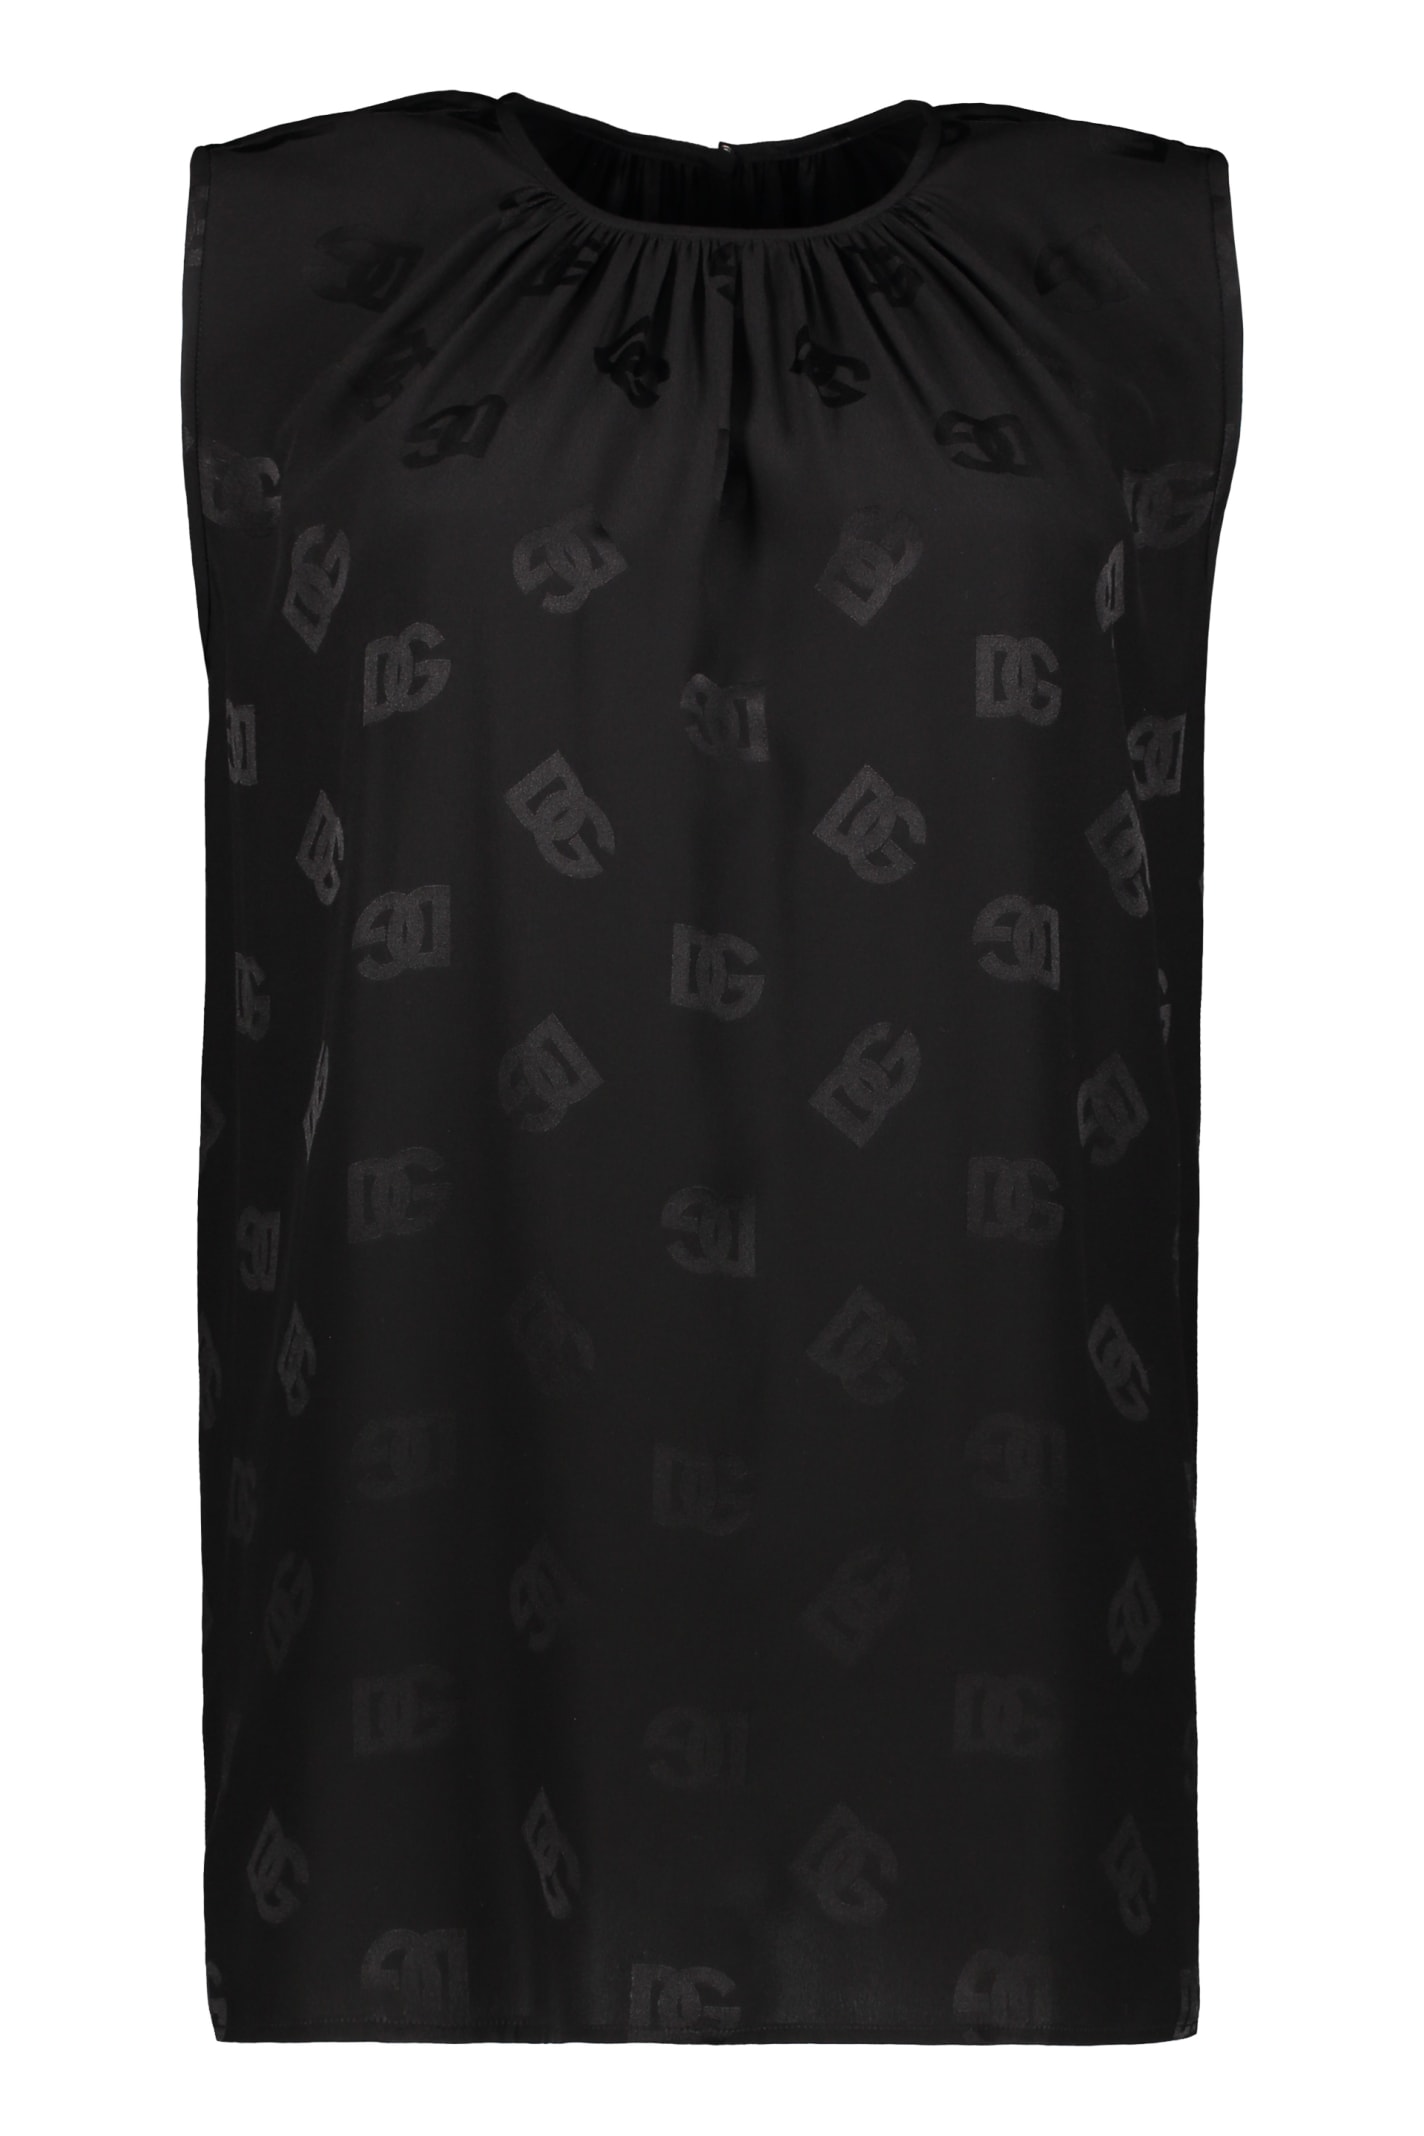 Dolce & Gabbana Silk Blouse In Black